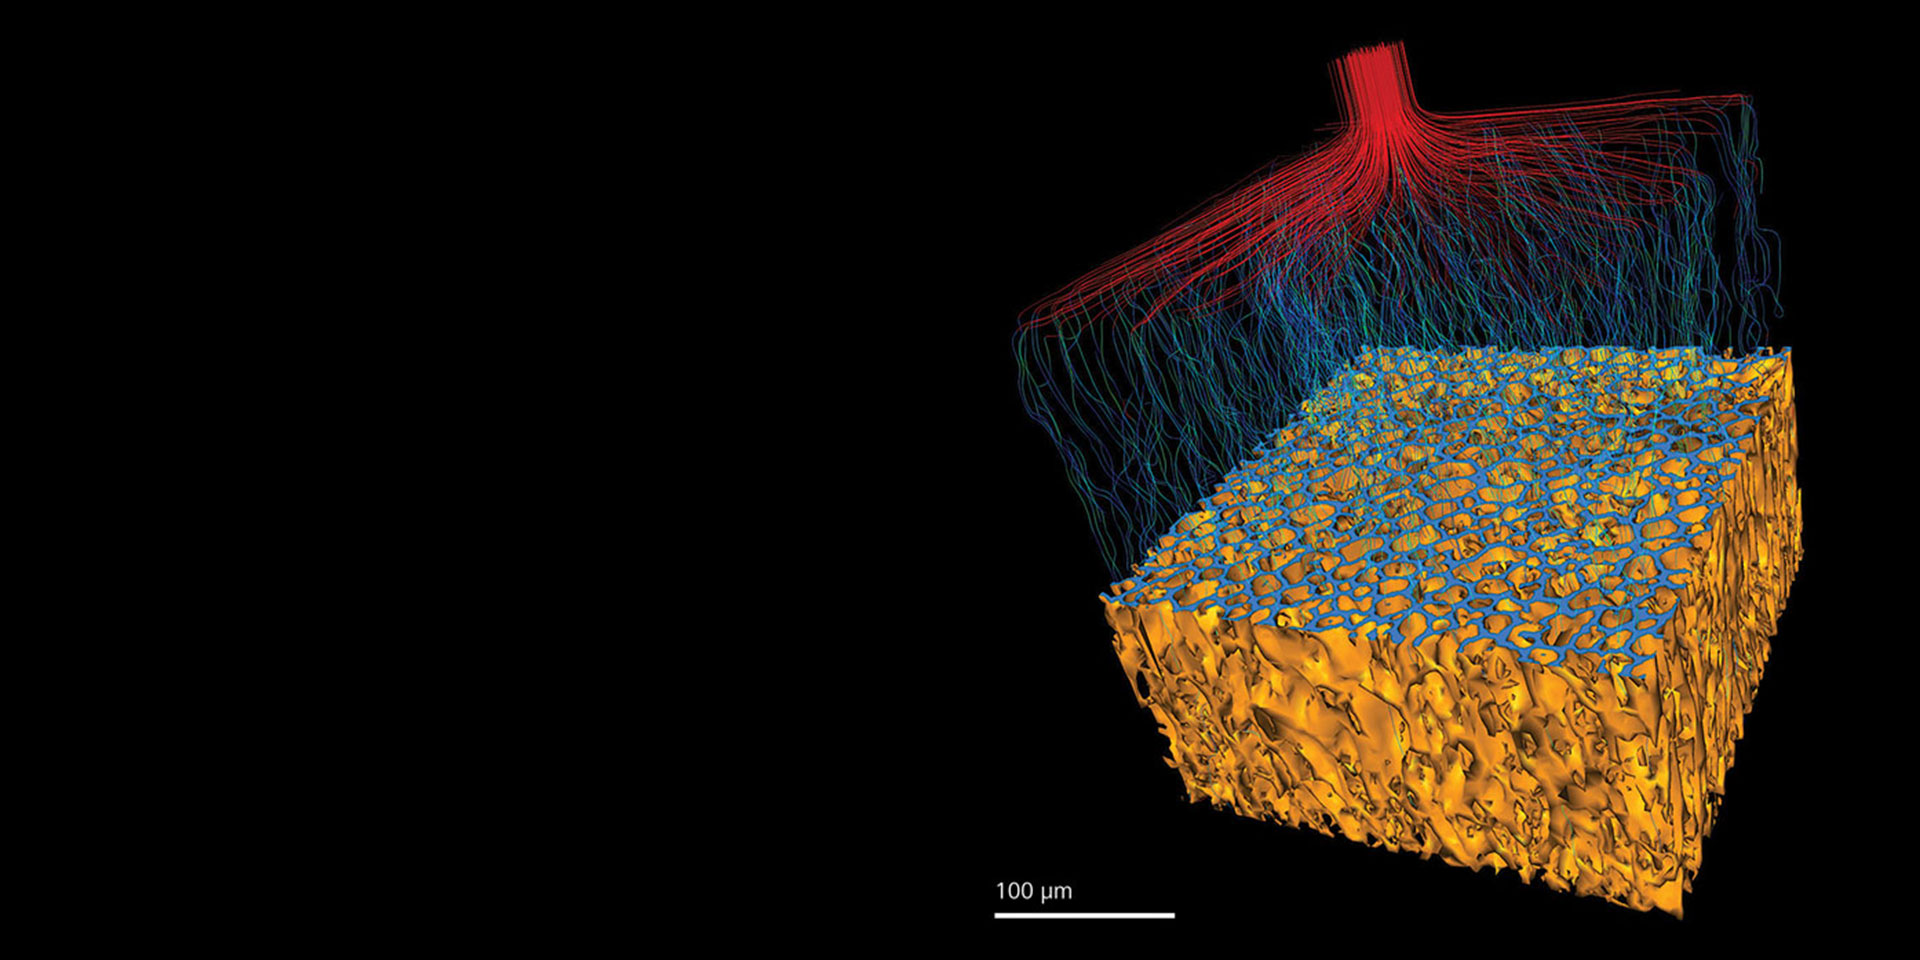 ウレタン骨核を有するポリマー。In situ実験後にイメージング。流体の流れをシミュレーションして透過性を示した例。